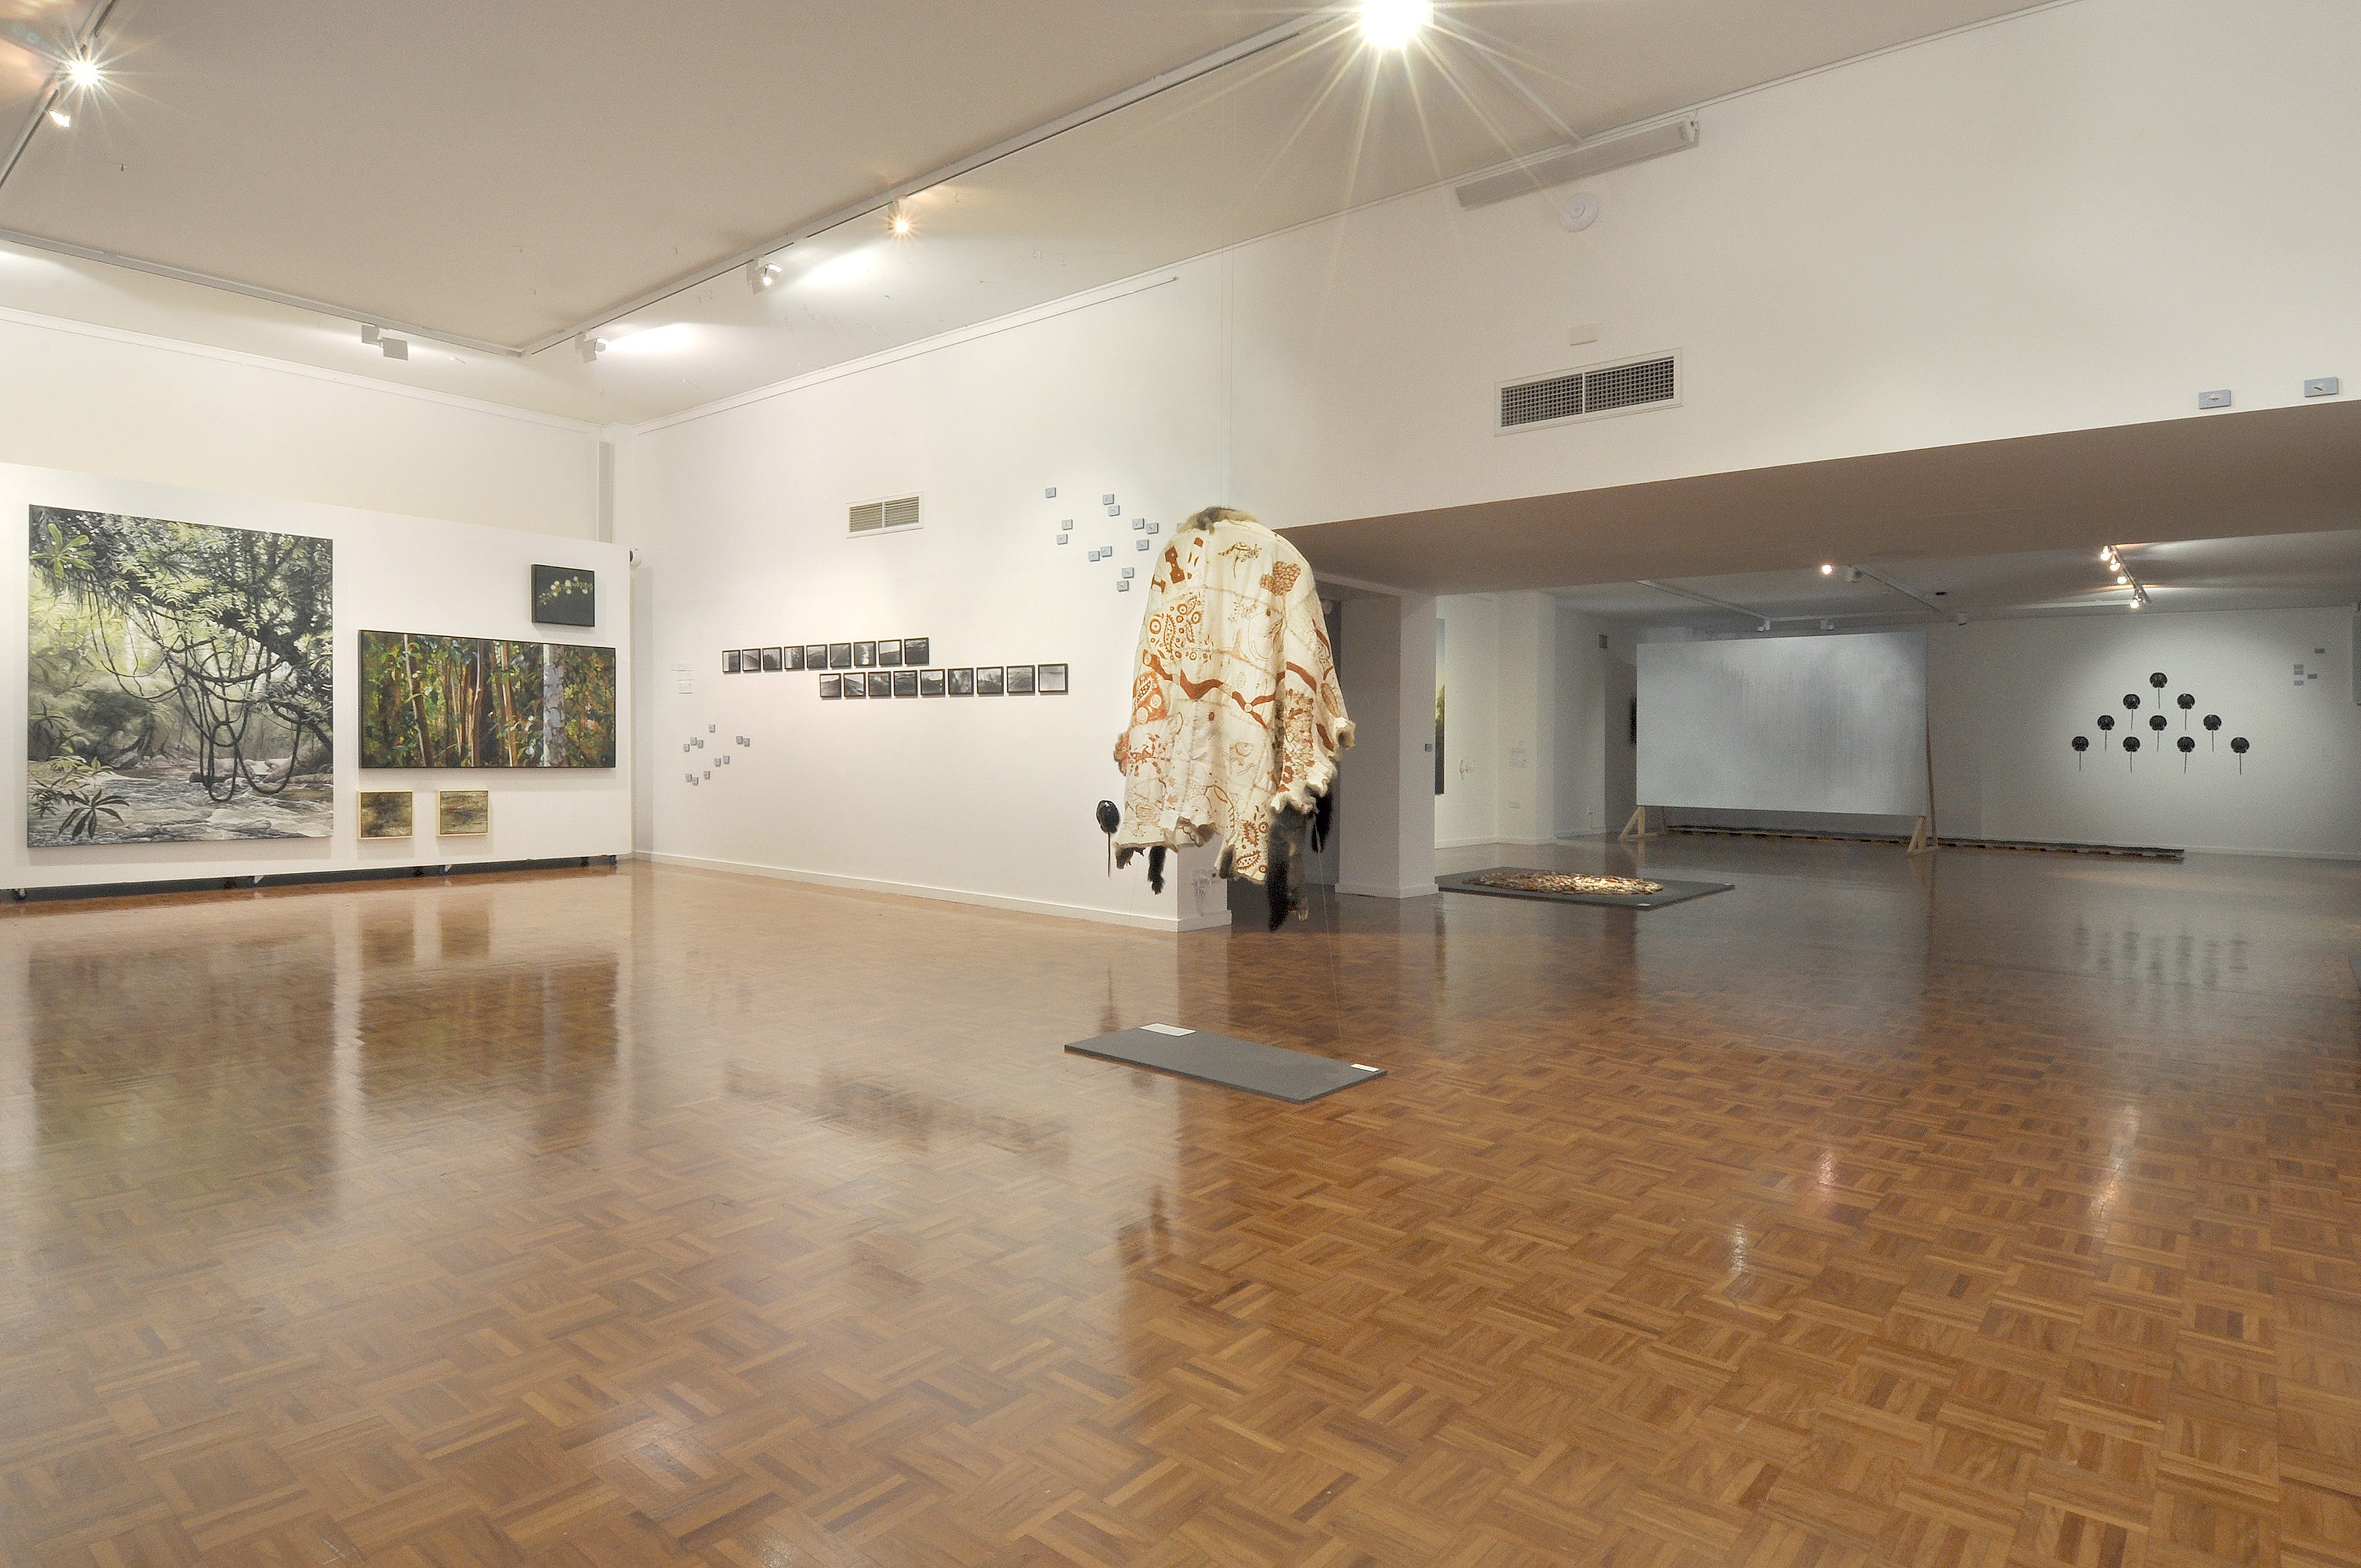 Noosa Regional Gallery - Attractions